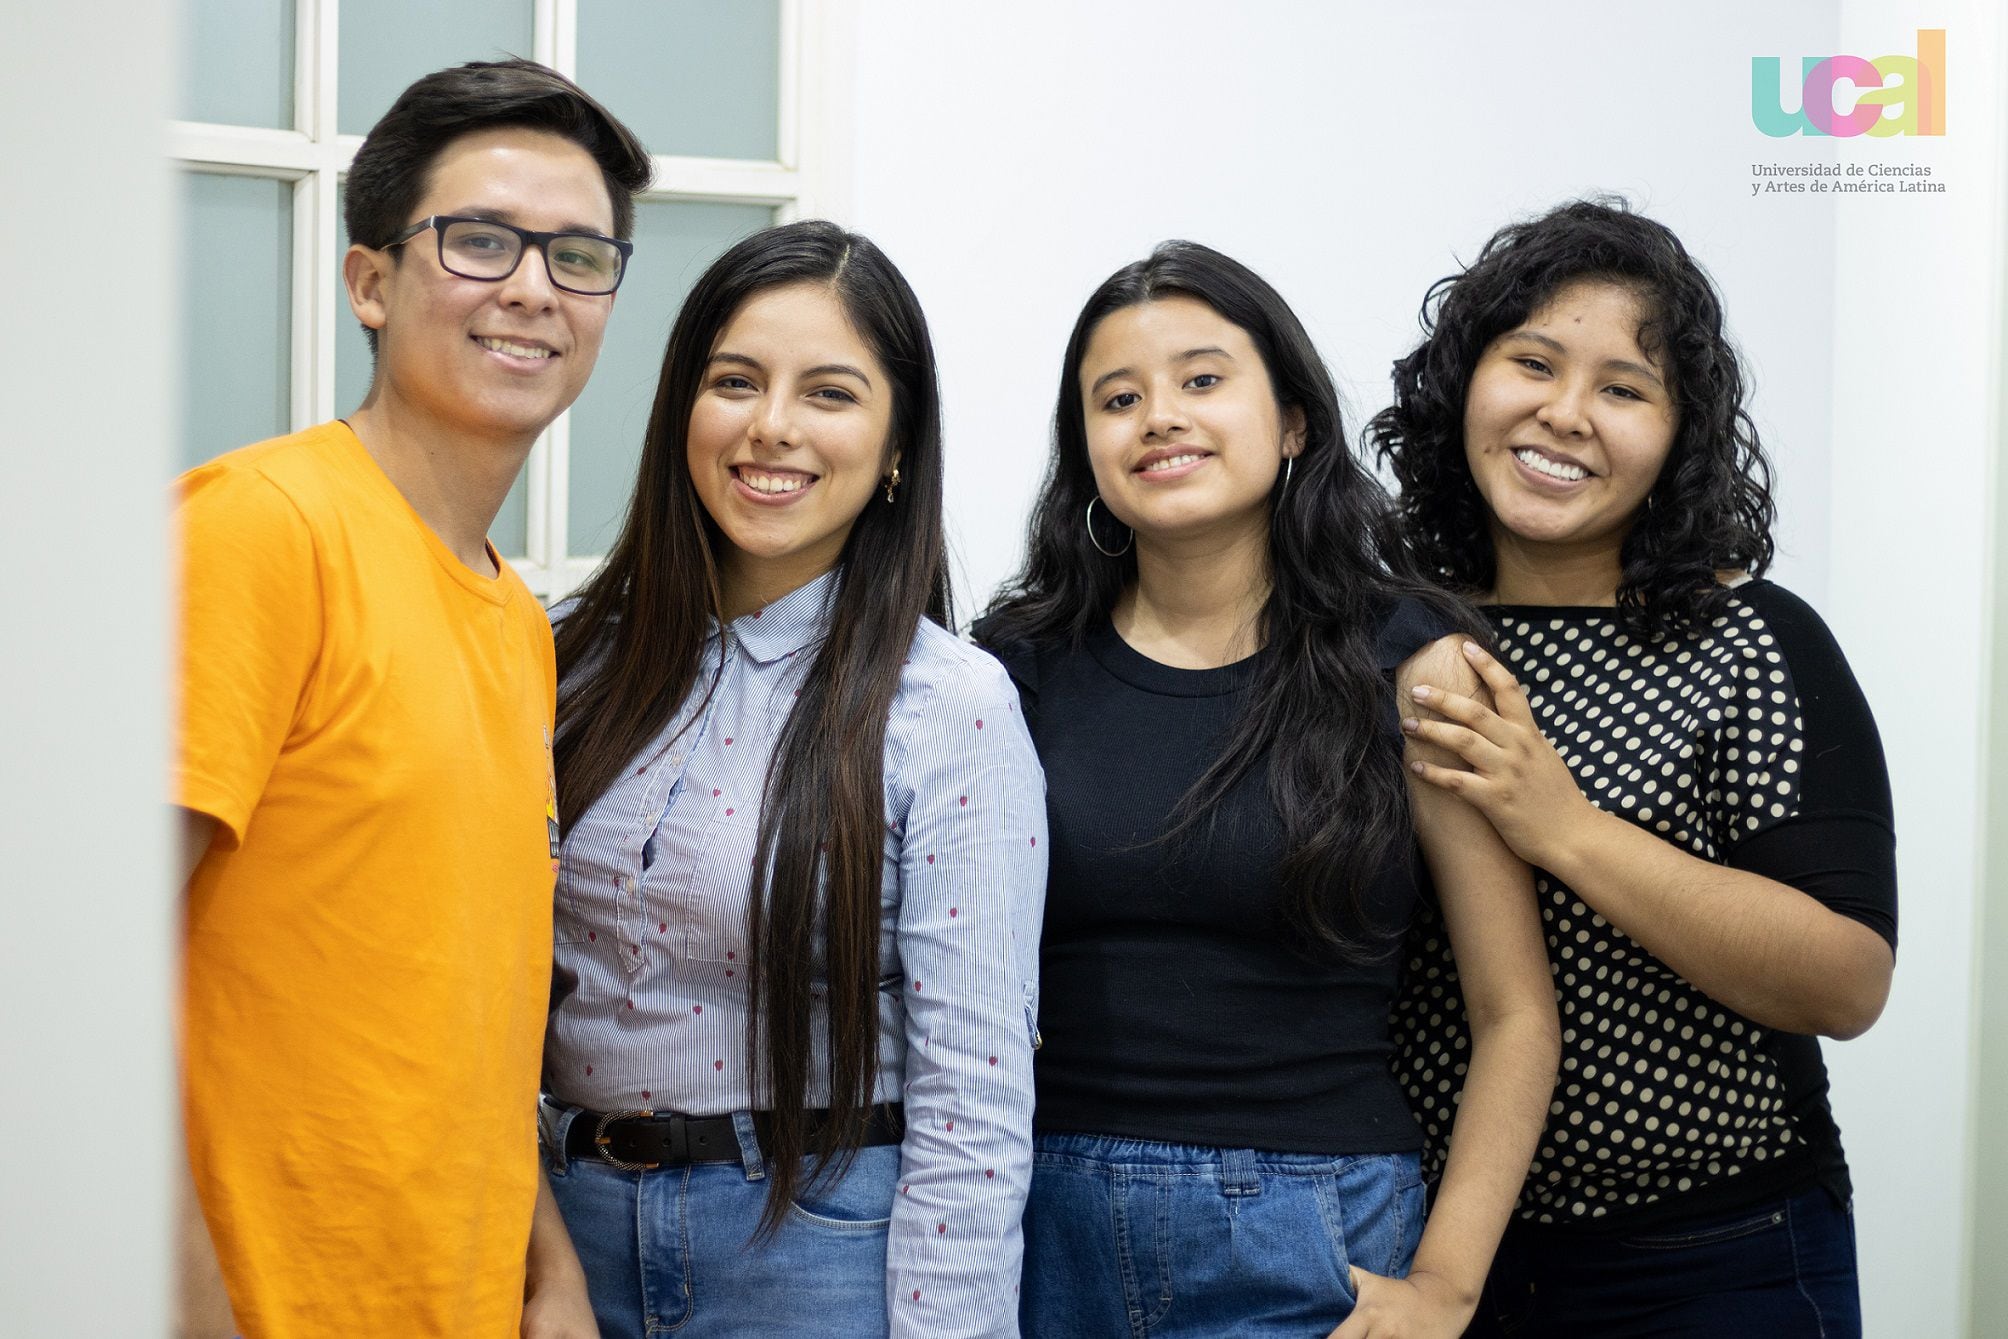 Alison Garro, Cynthia Huarsaya, Dylan Canepa y Katherine Orellana, estudiantes de UCAL